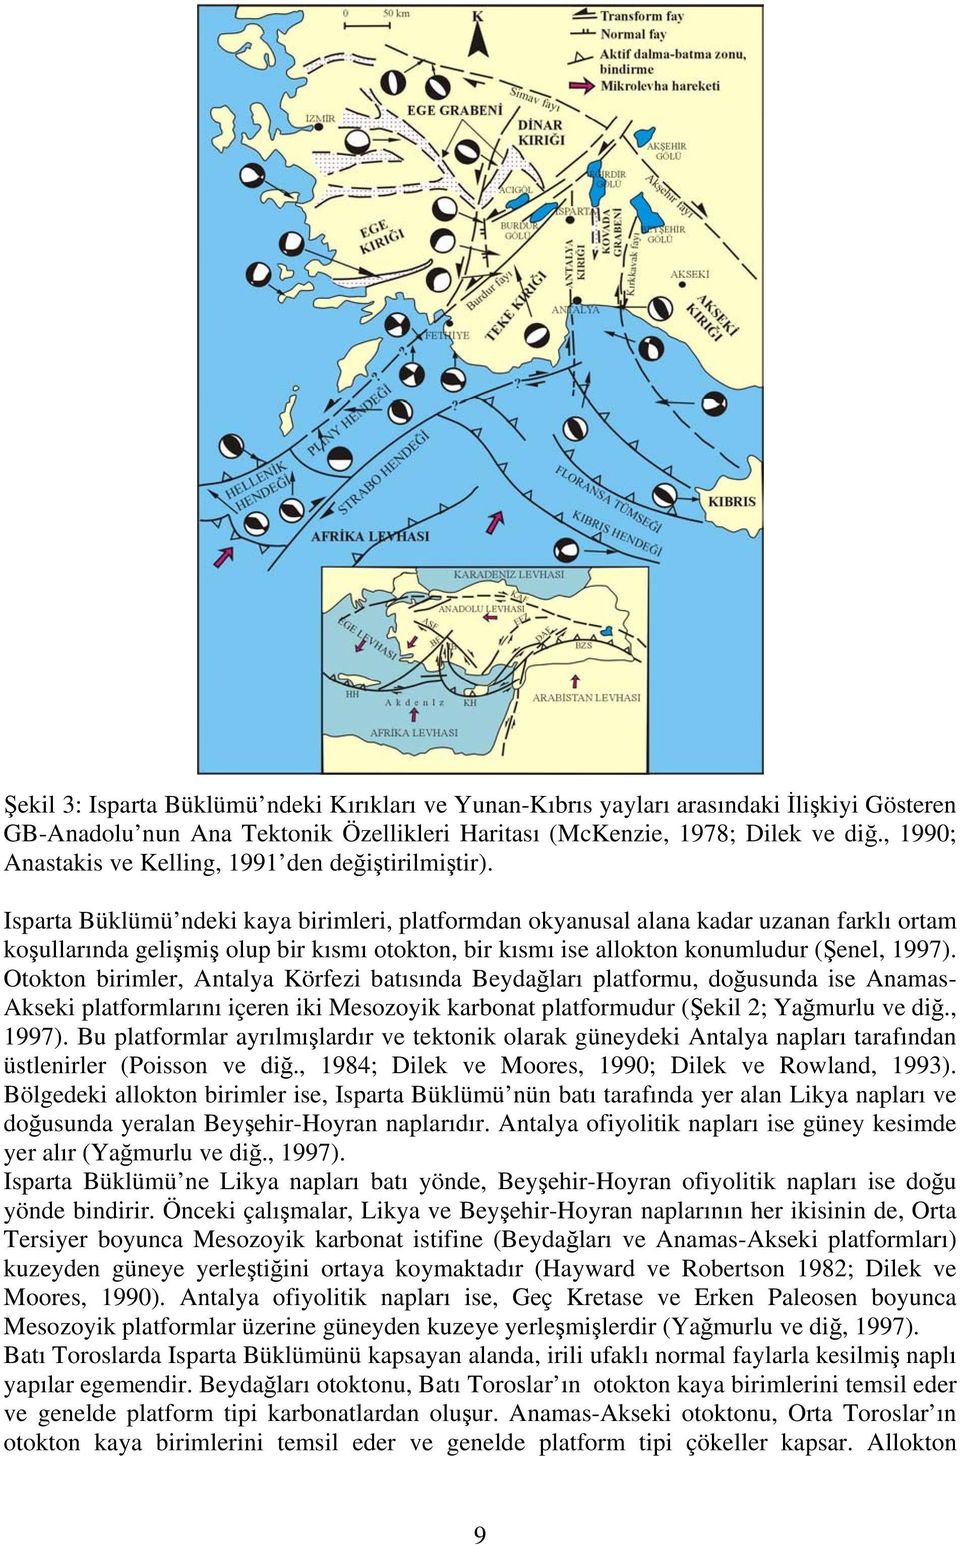 Isparta Büklümü ndeki kaya birimleri, platformdan okyanusal alana kadar uzanan farklı ortam koşullarında gelişmiş olup bir kısmı otokton, bir kısmı ise allokton konumludur (Şenel, 1997).